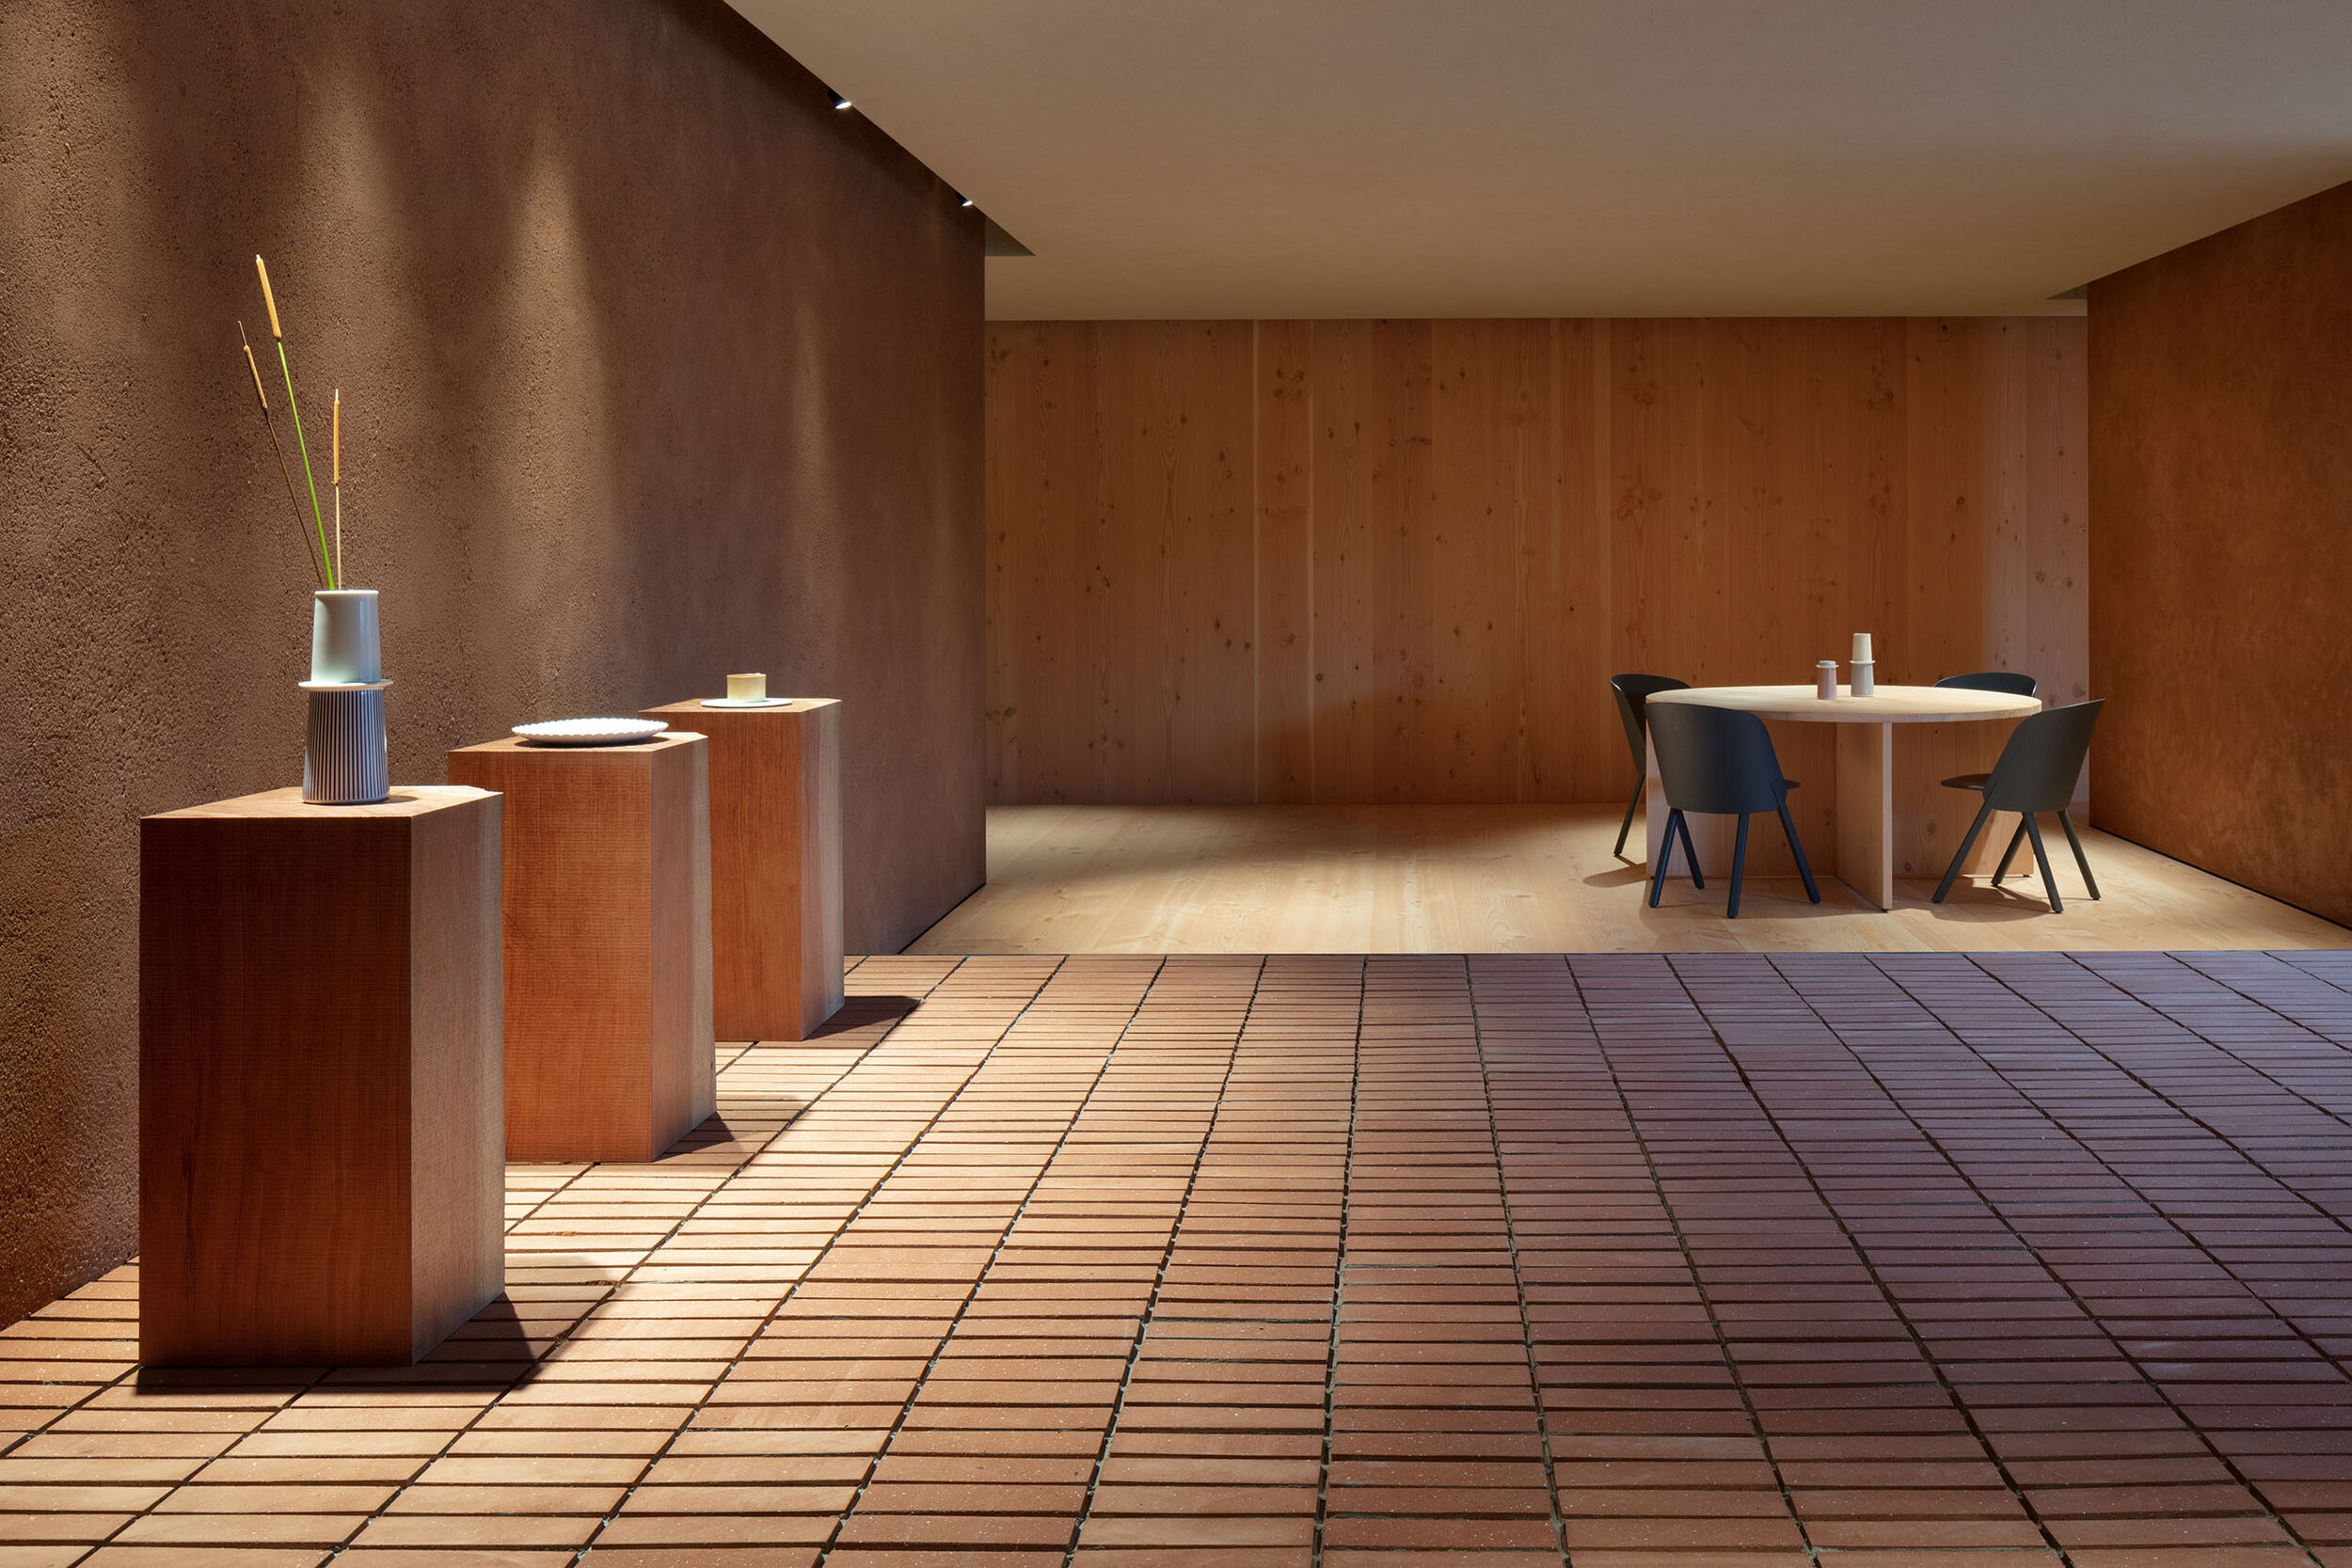  Teruhiro Yanagihara Studio used timbers for 1616/arita japan showroom in Arita, Japan. 